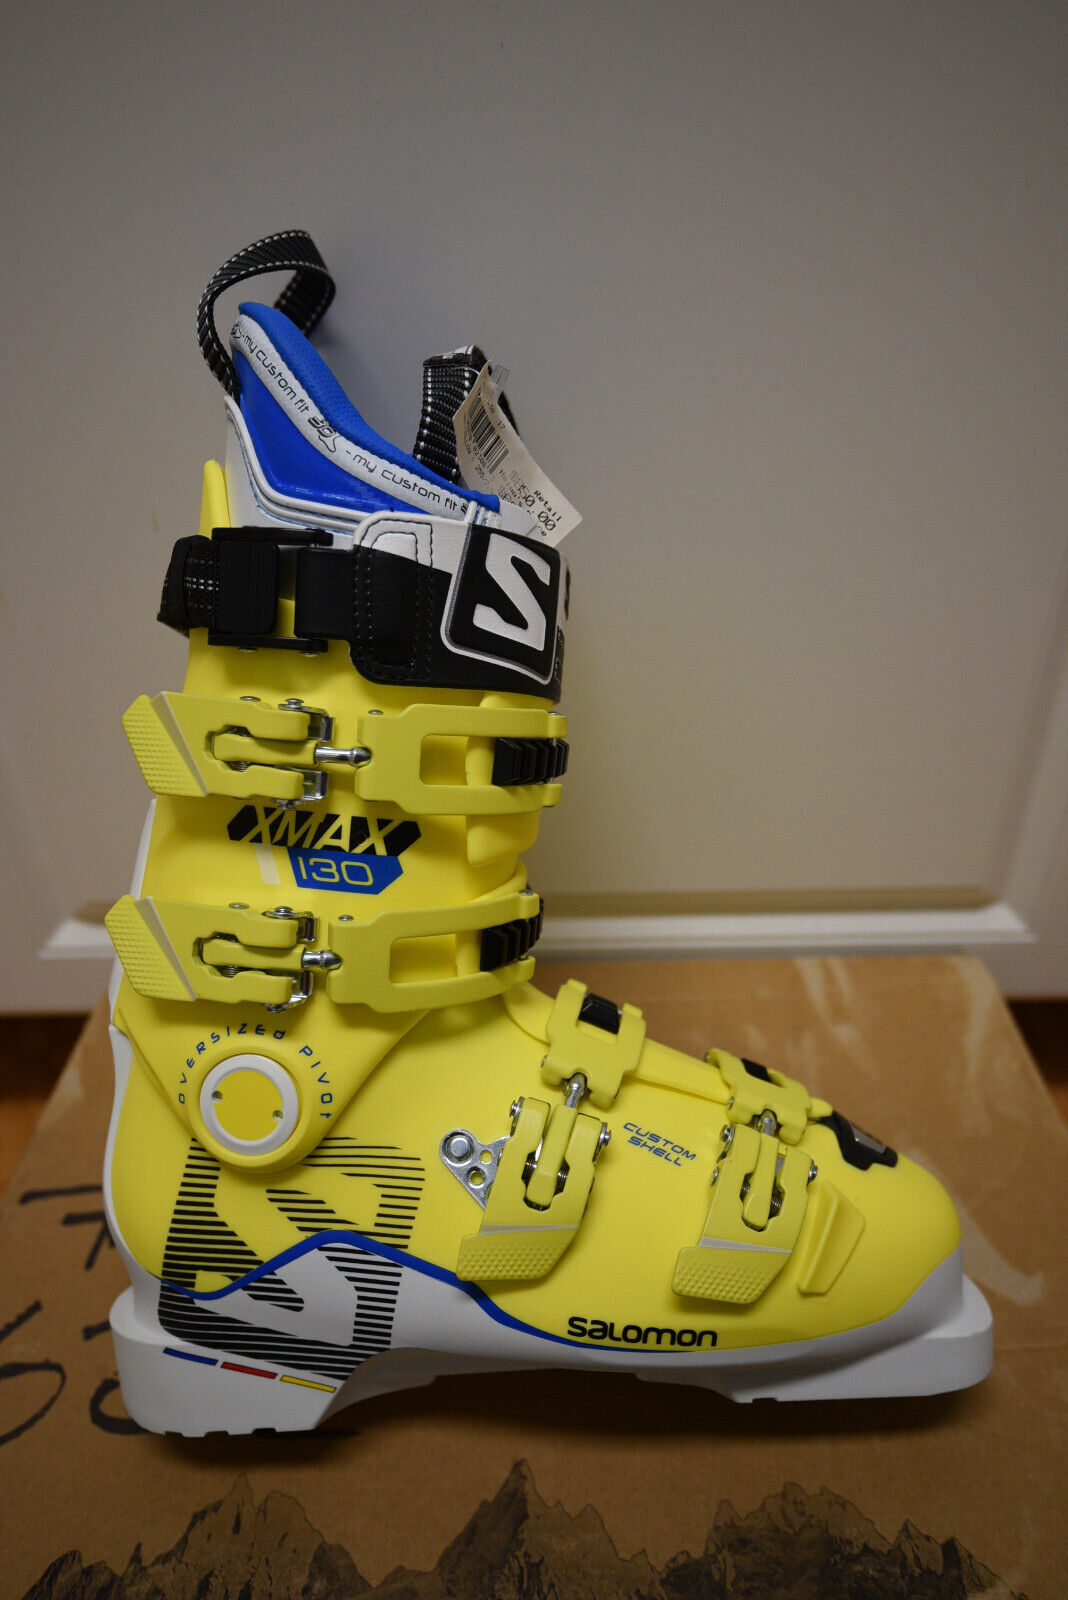 Salomon X MAX 130 Ski Boots White/Yellow 295mm 25/25.5 - Brand New